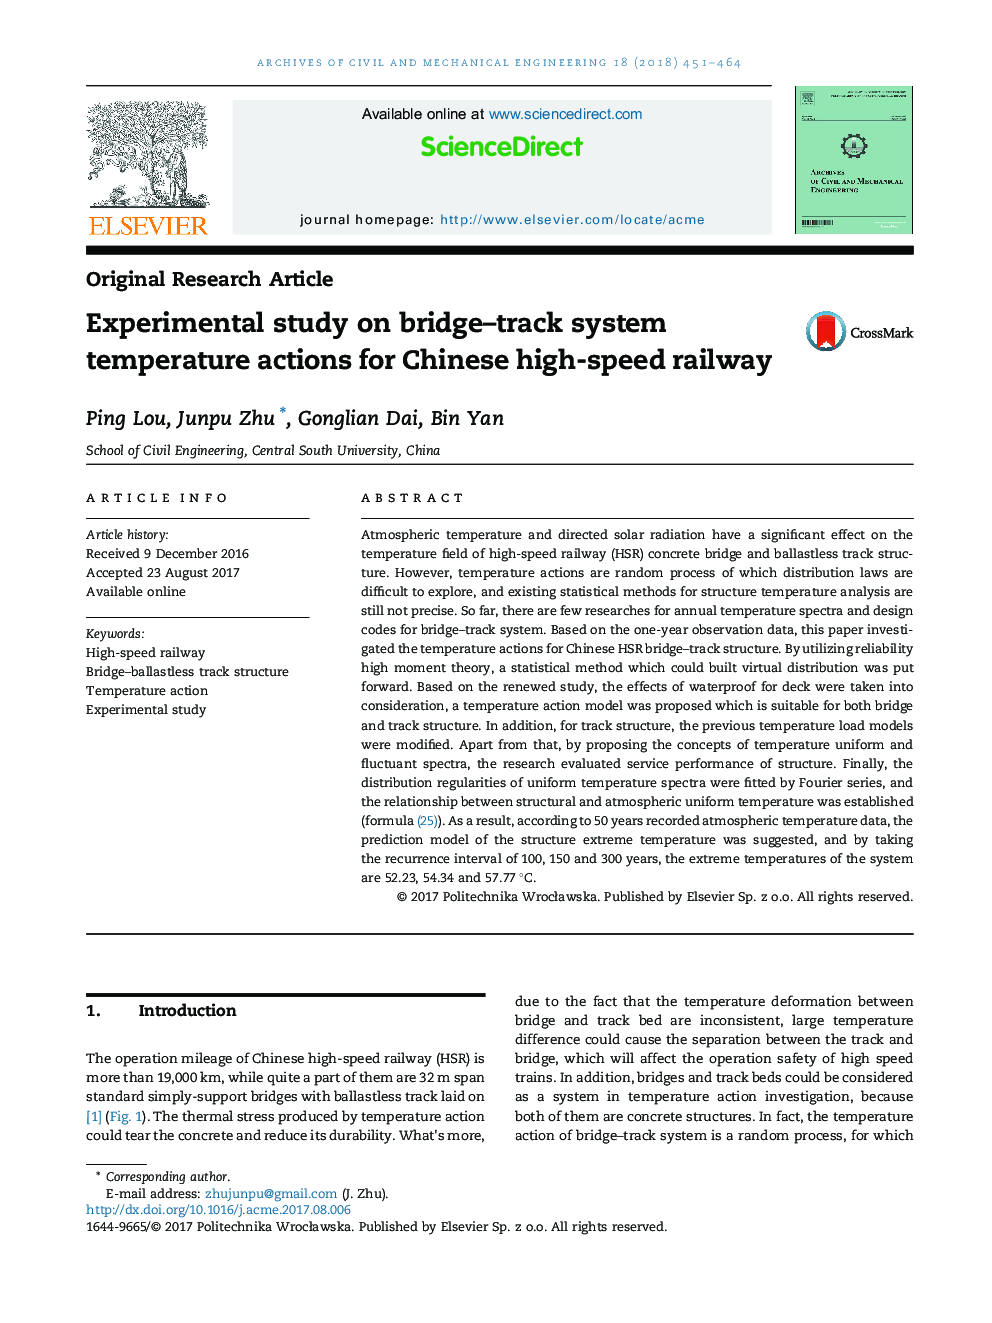 مطالعه تجربی در مورد اقدامات دماسنجی پل راه آهن برای راه آهن سریع چین 